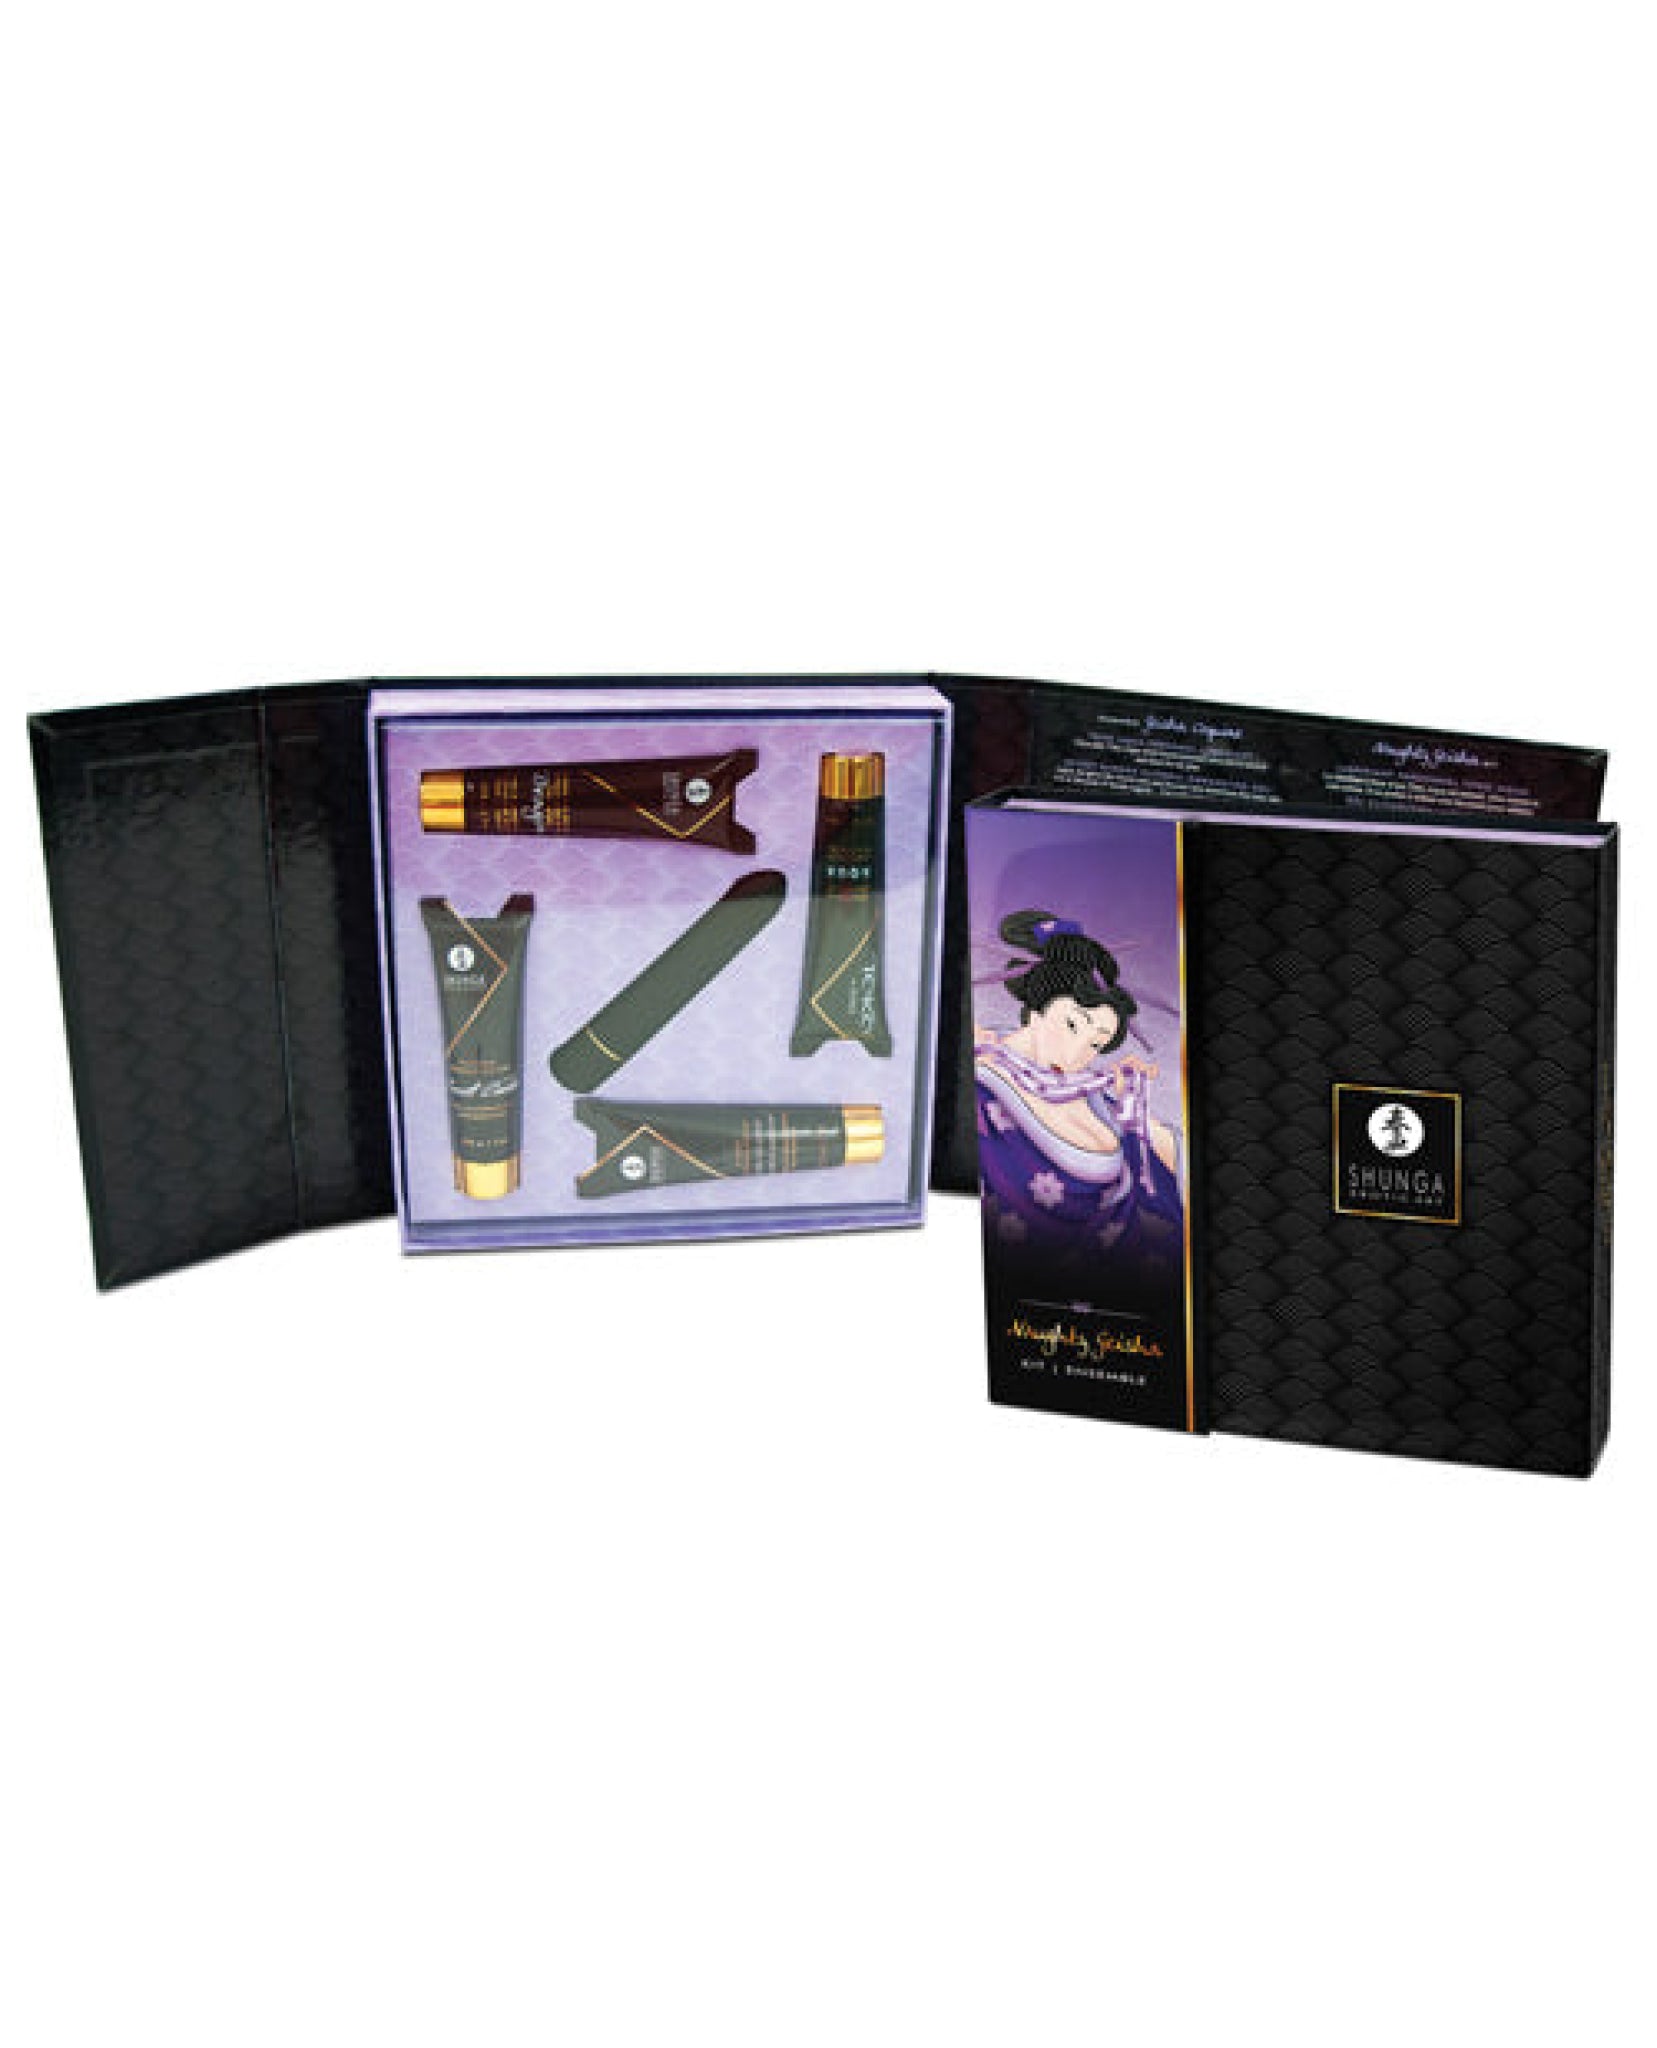 Shunga Naughty Geisha Collection - Asst. Scents Shunga